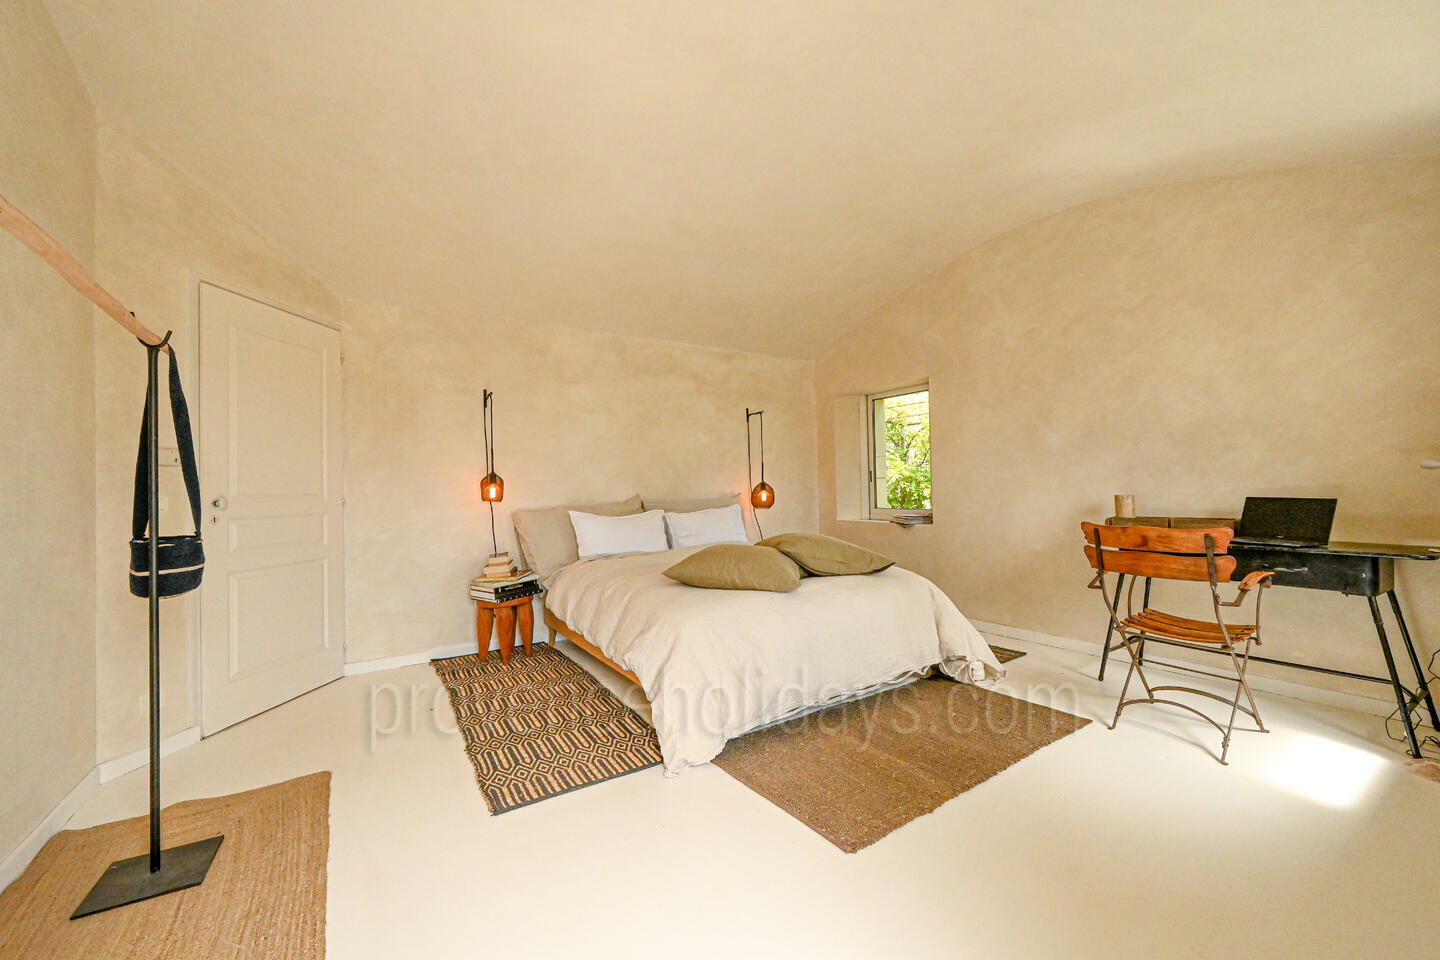 39 - Une Maison en Provence: Villa: Bedroom